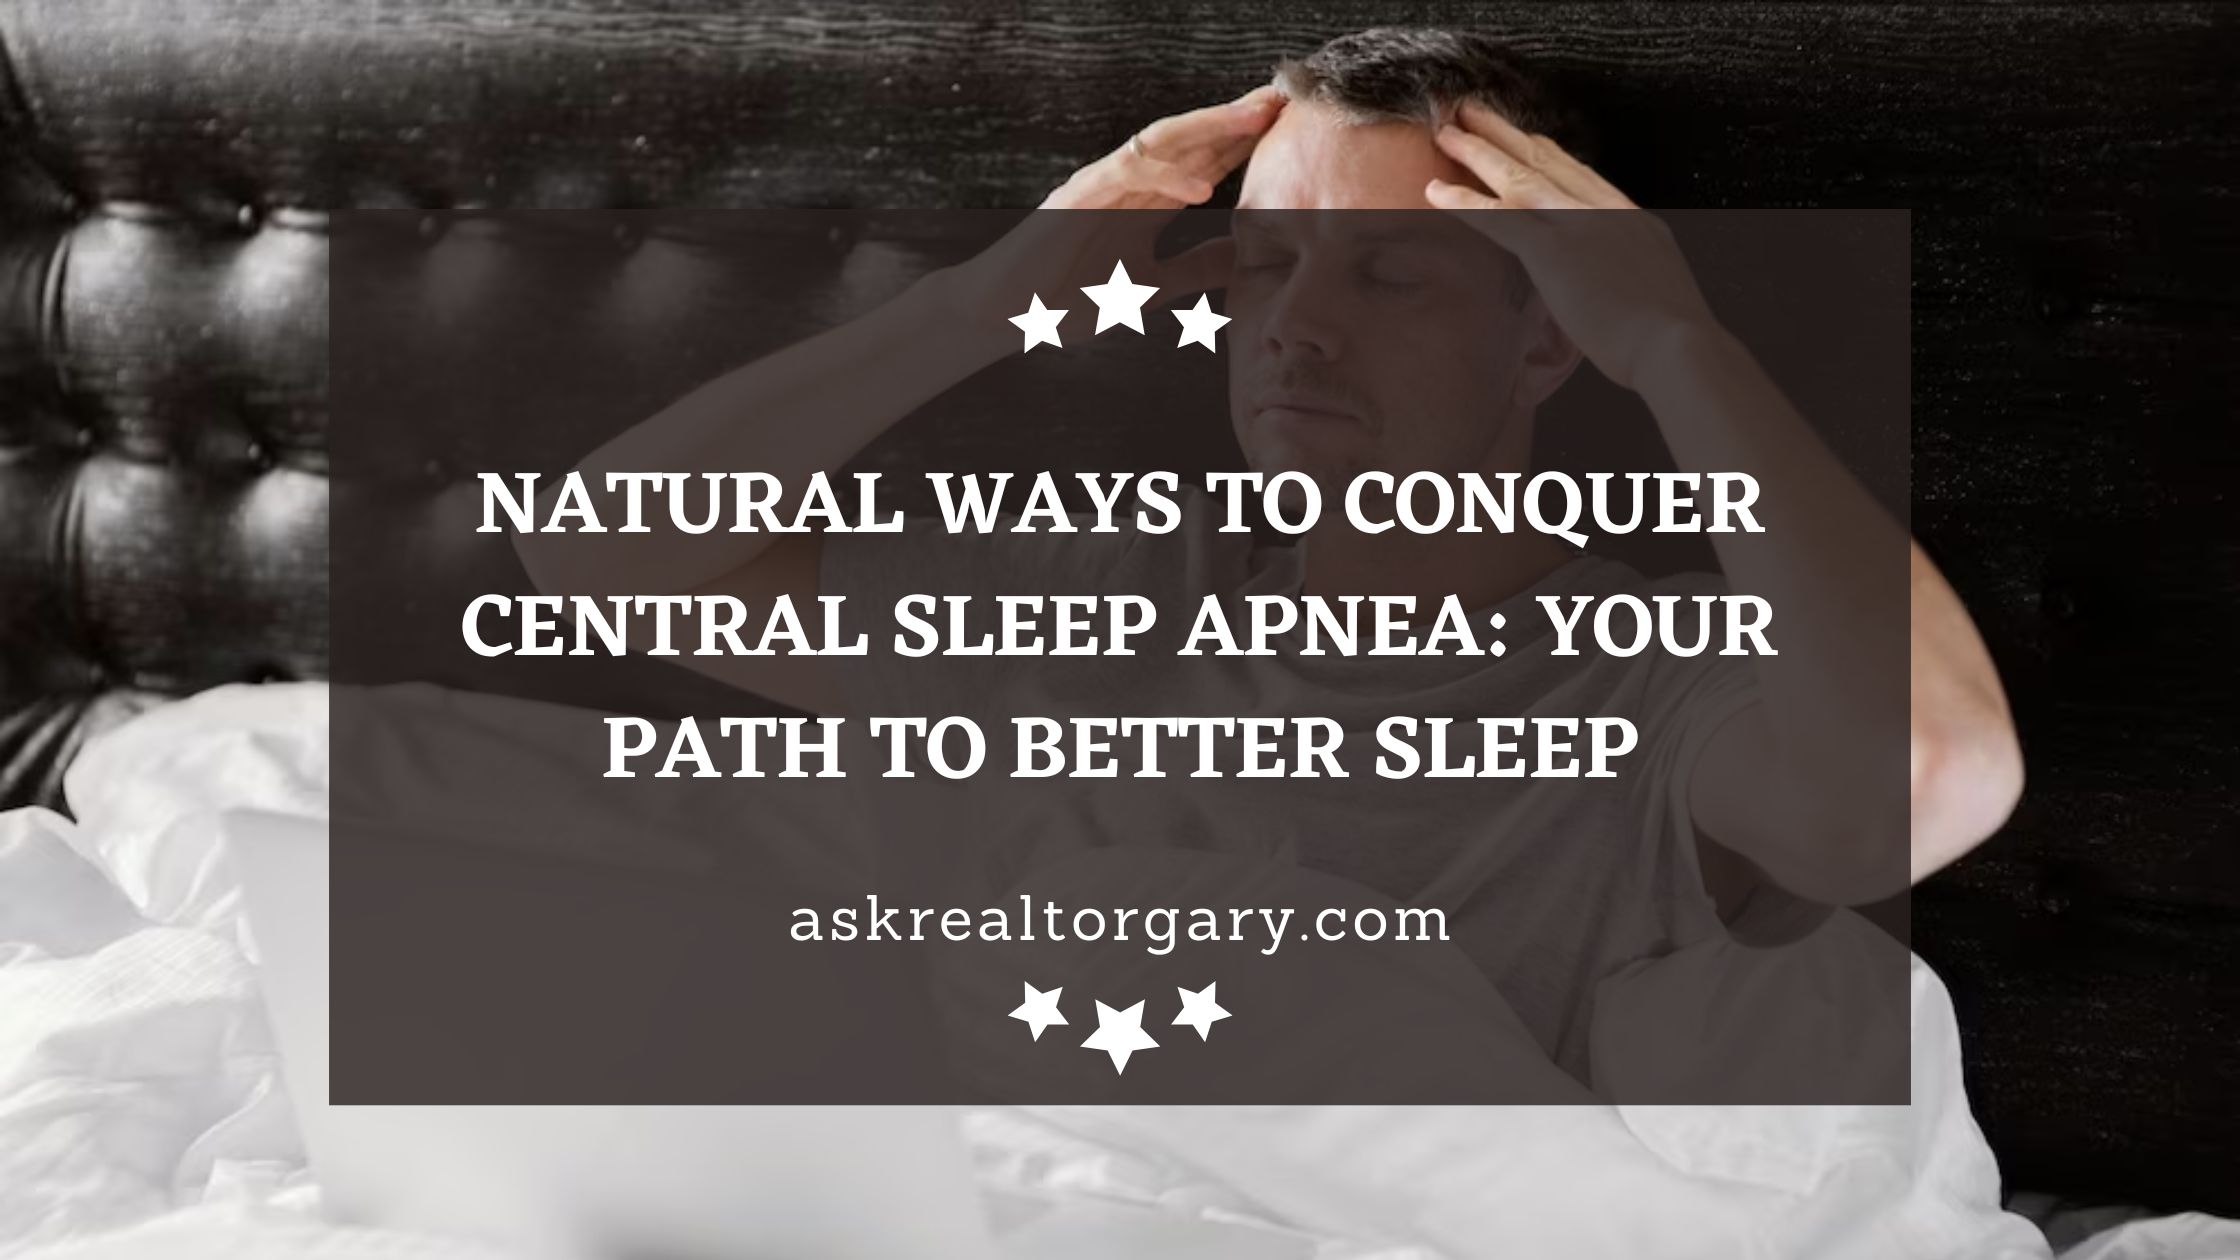 Conquer Central Sleep Apnea